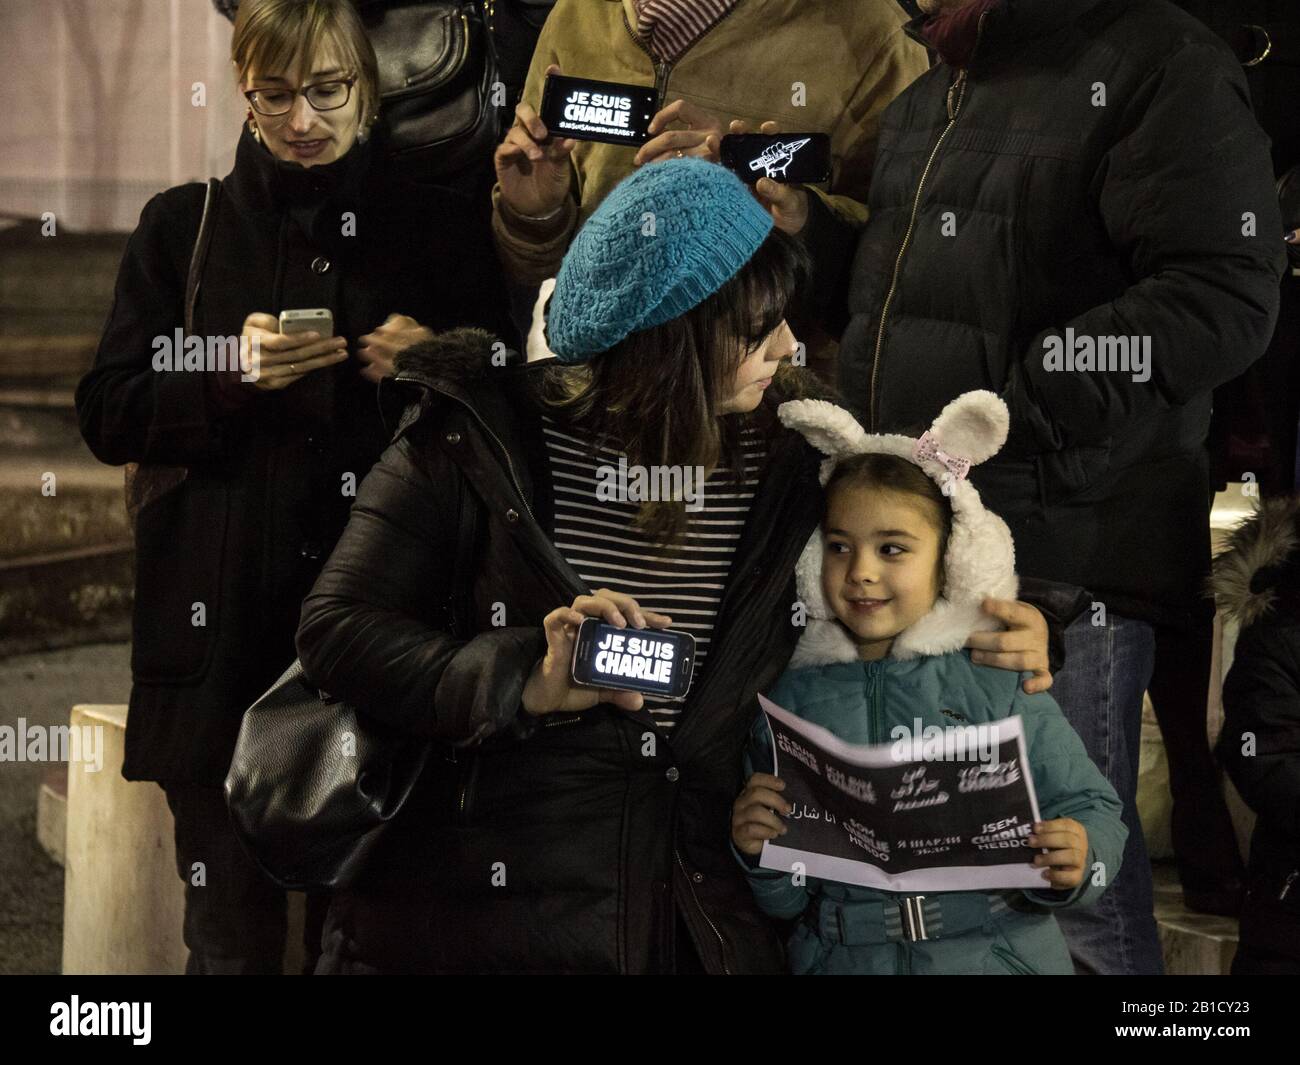 Belgrad, SERBIEN - 10. JANUAR 2015: Mutter und ihre Tochter, die "je suis charlie"-Zeichen auf einem Protest in Erinnerung an die Opfer des Pariser Terroristen halten Stockfoto